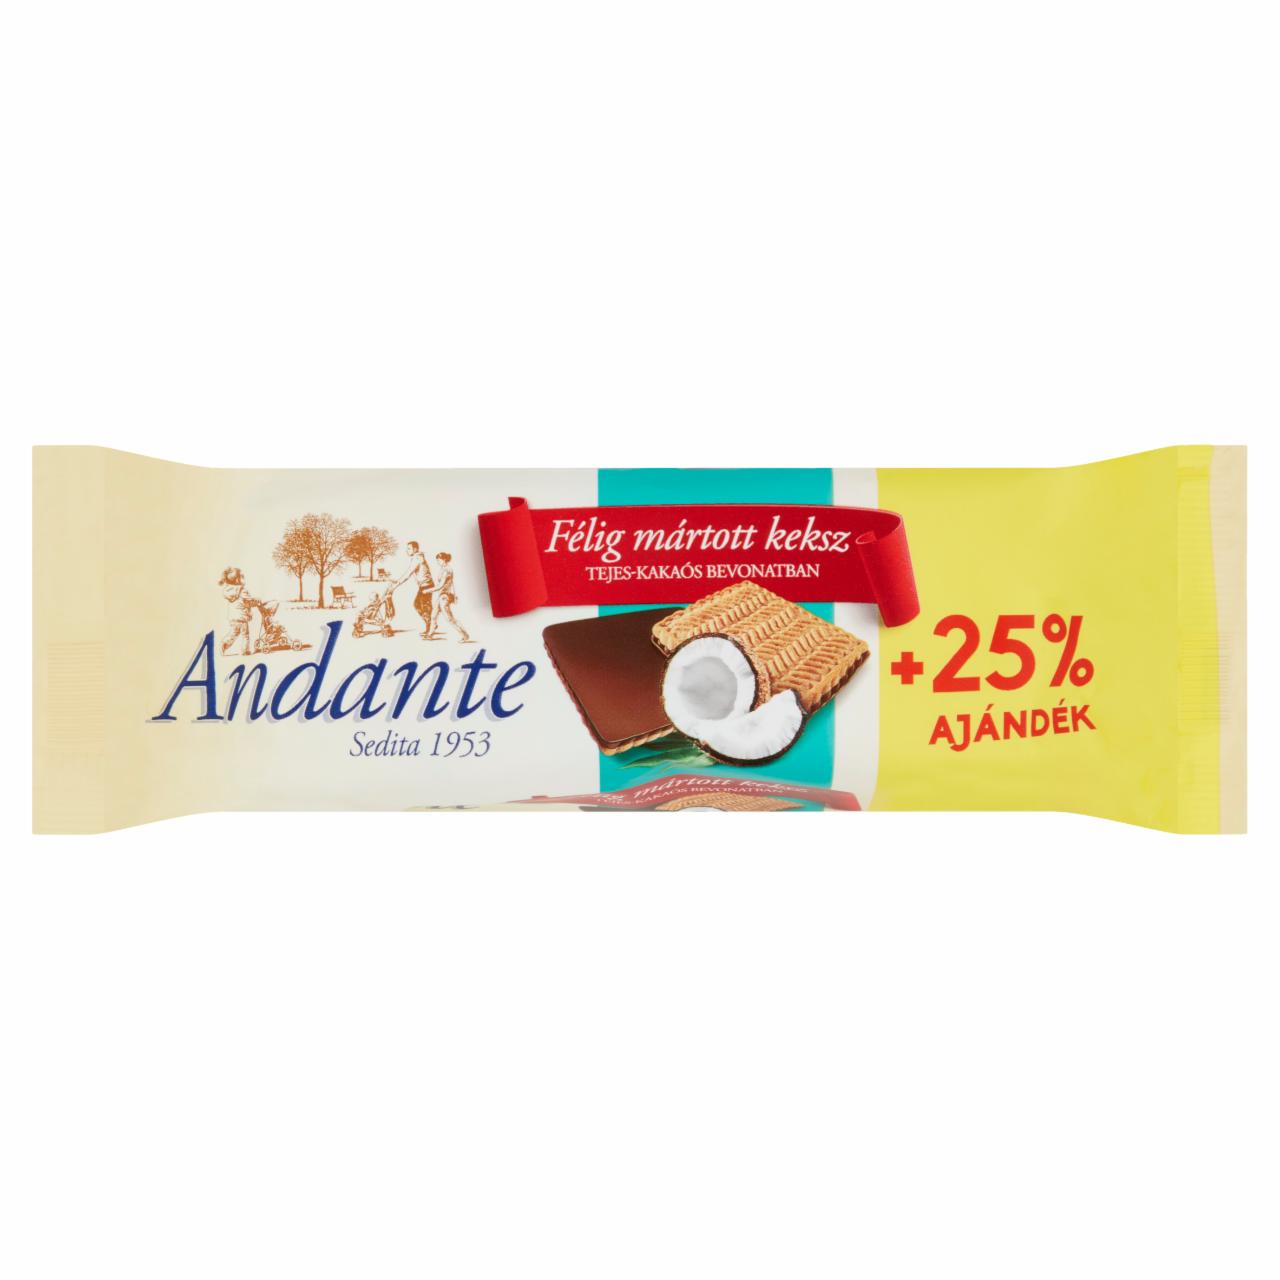 Képek - Andante félig mártott kókuszos keksz tejes-kakaós bevonatban 125 g